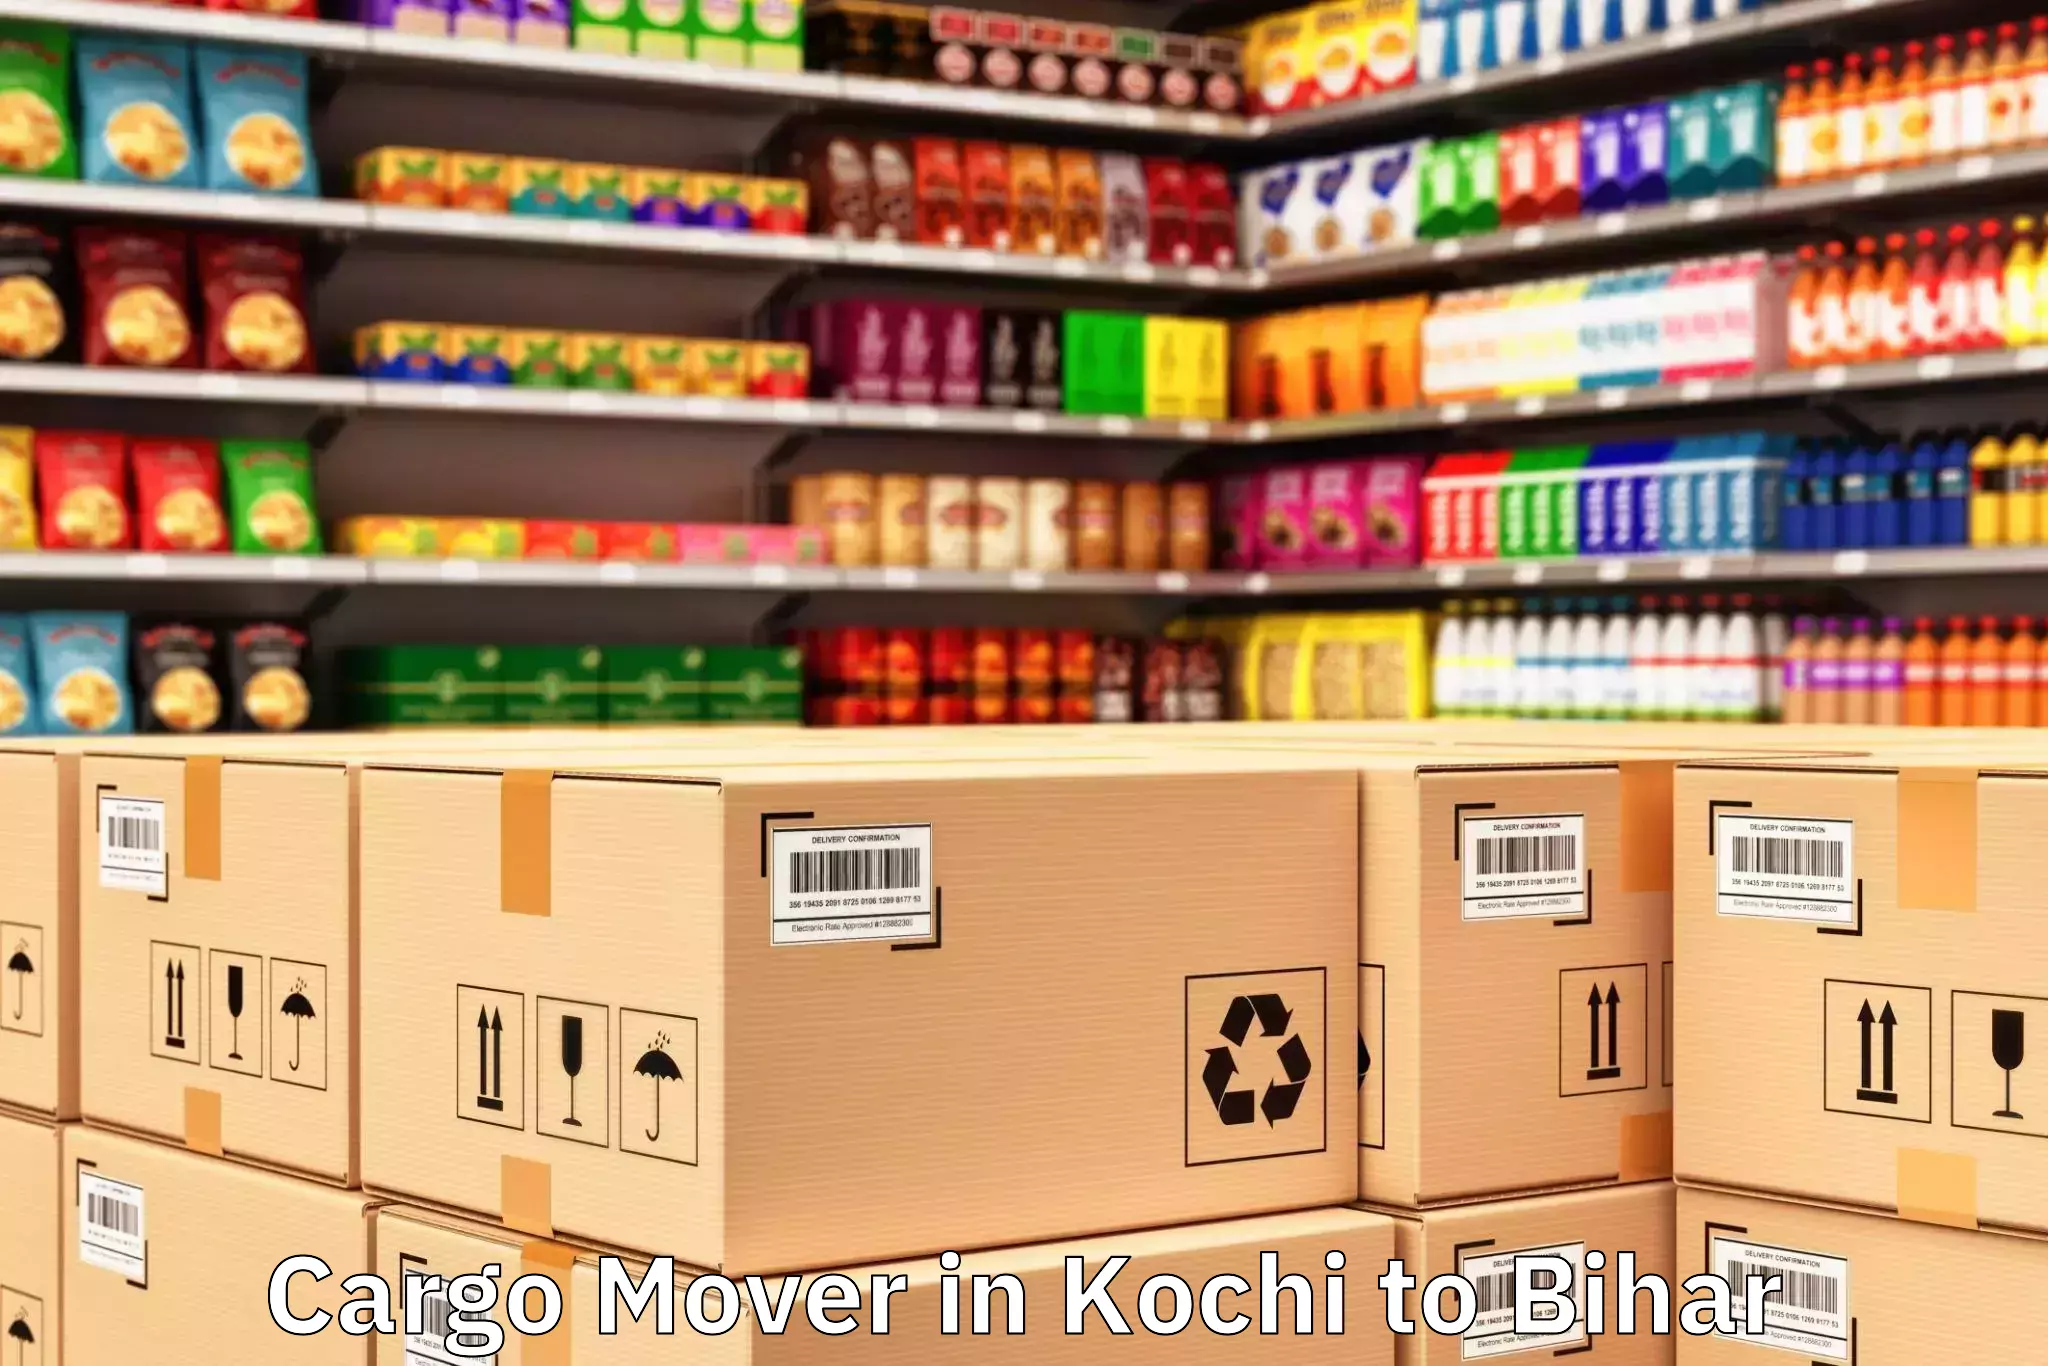 Get Kochi to Sheikhpura Cargo Mover